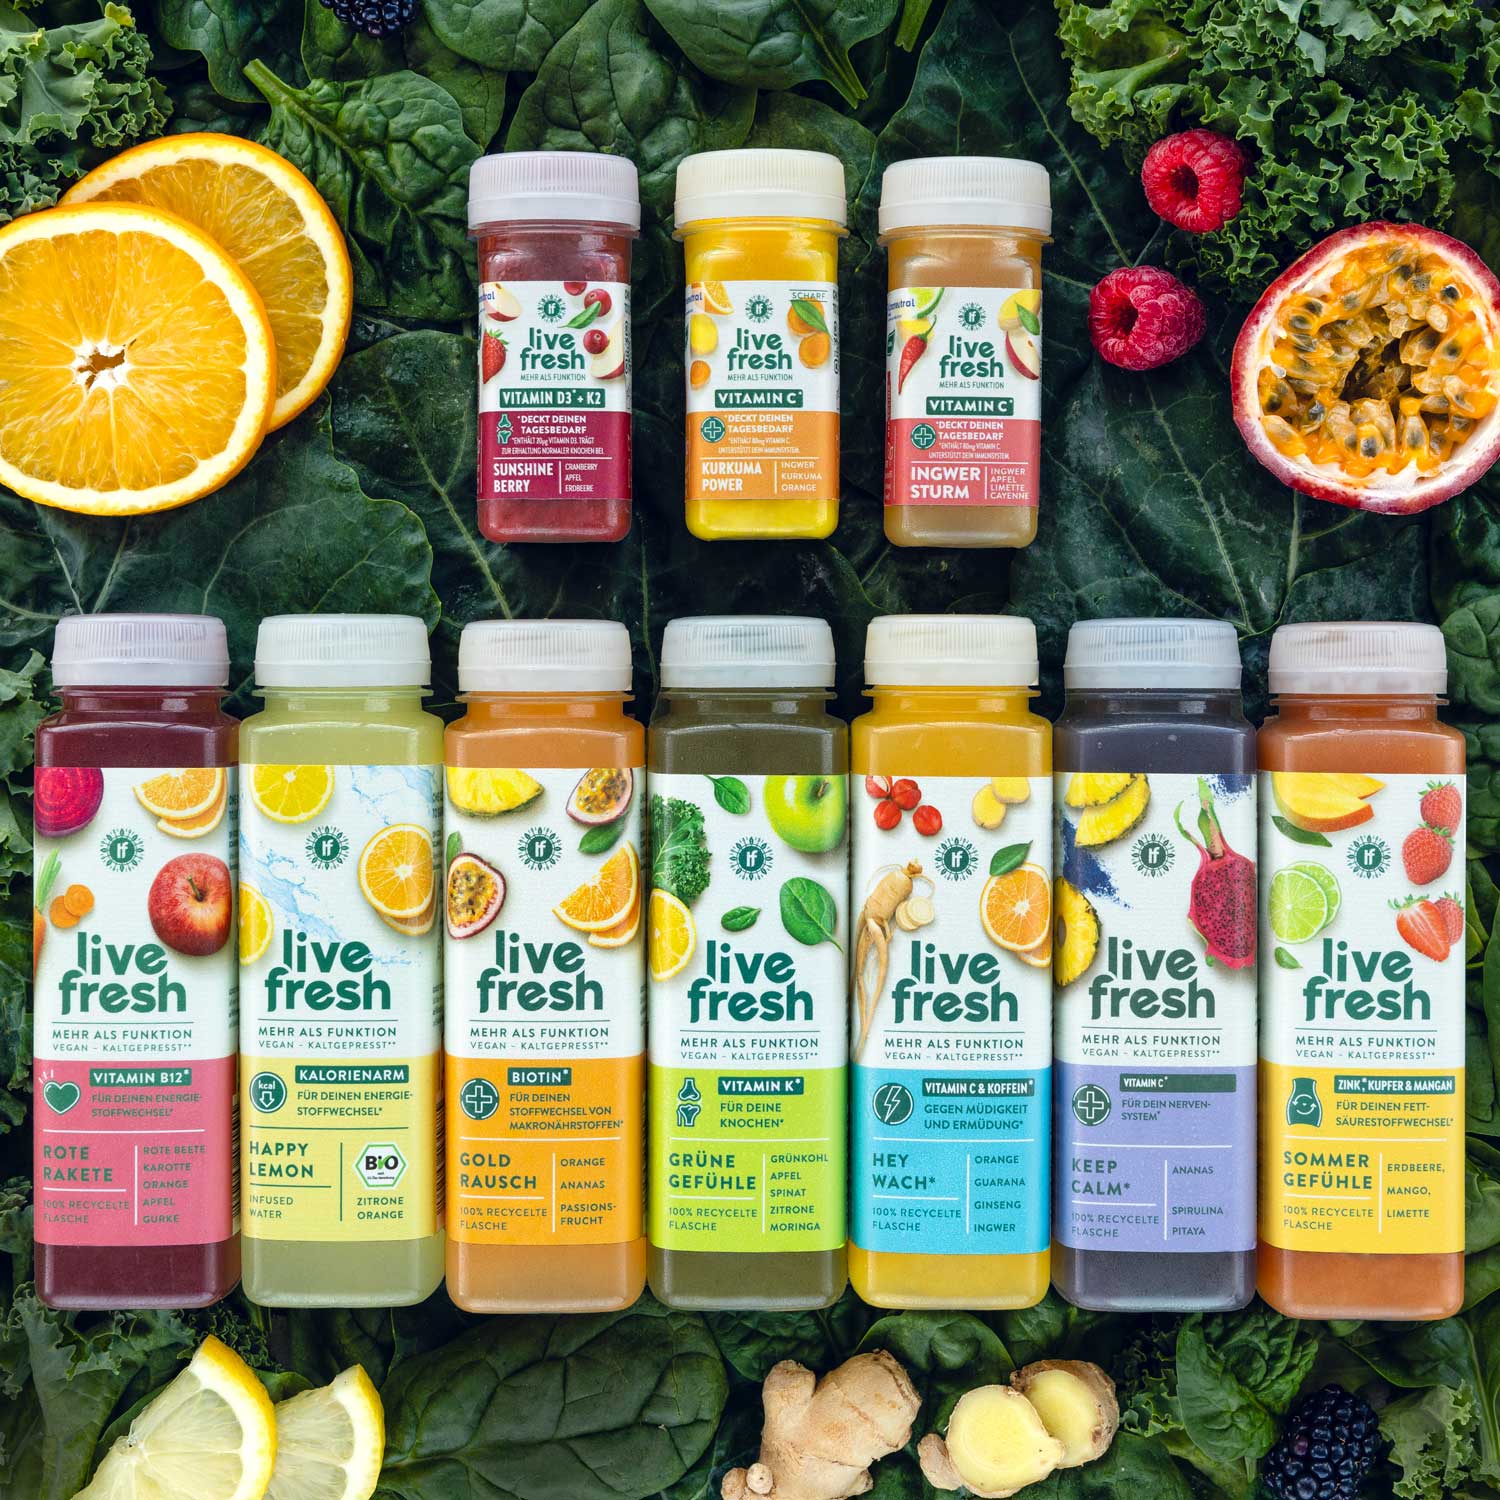 Reihe von 'Live Fresh' Saftflaschen auf einem grünen Blätterhintergrund, darunter Varianten wie 'Sunshine Berry' und 'Ingwer Sturm', perfekt für Vitaminanreicherung und Wohlbefinden.